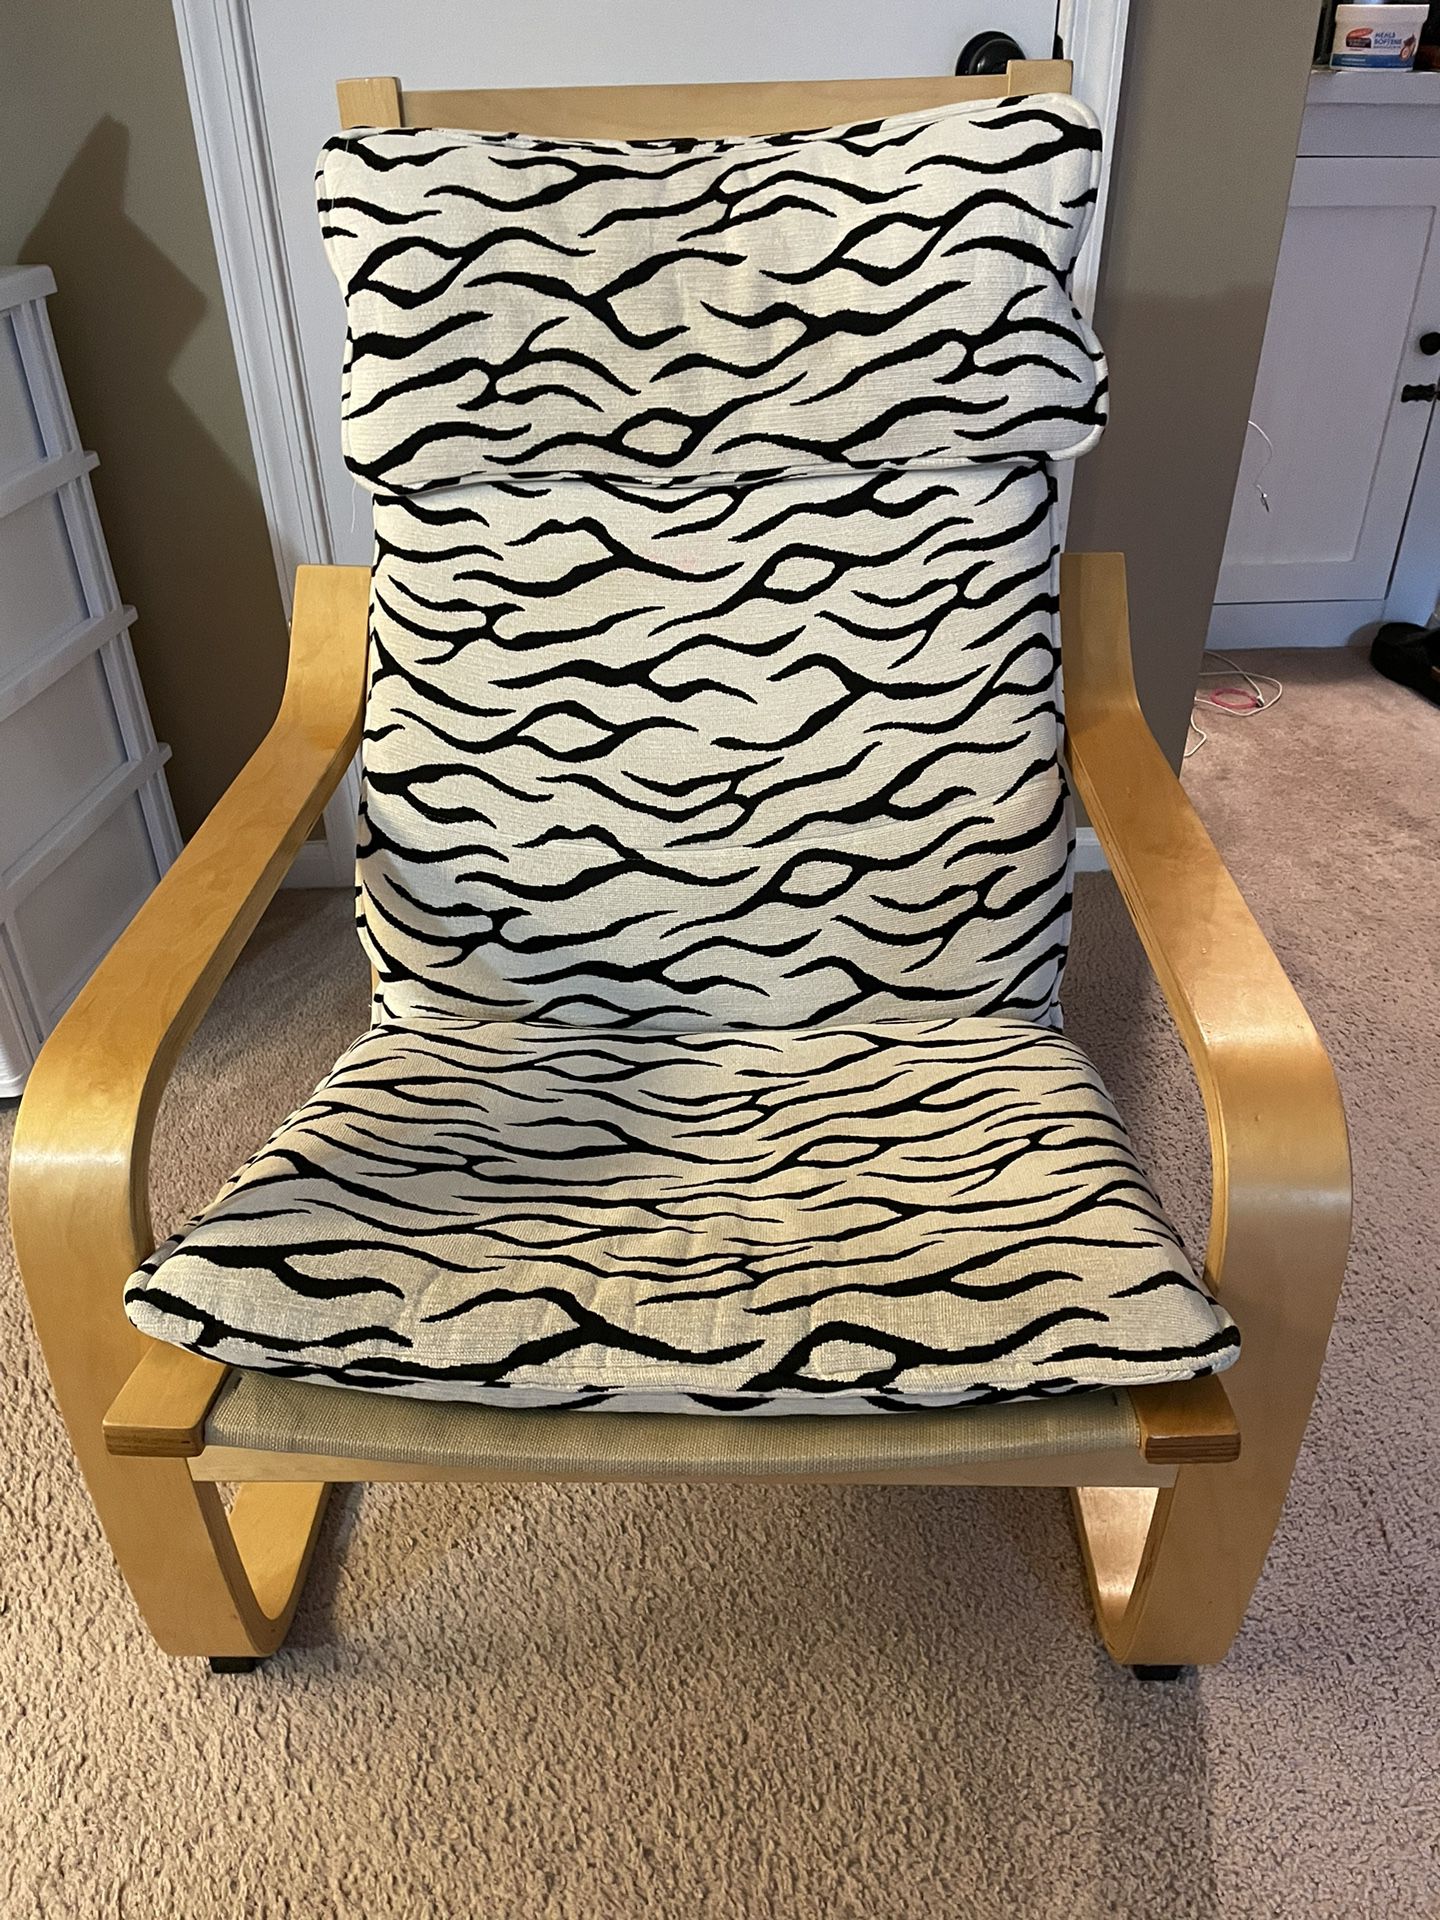 IKEA Poang Rocking Chair